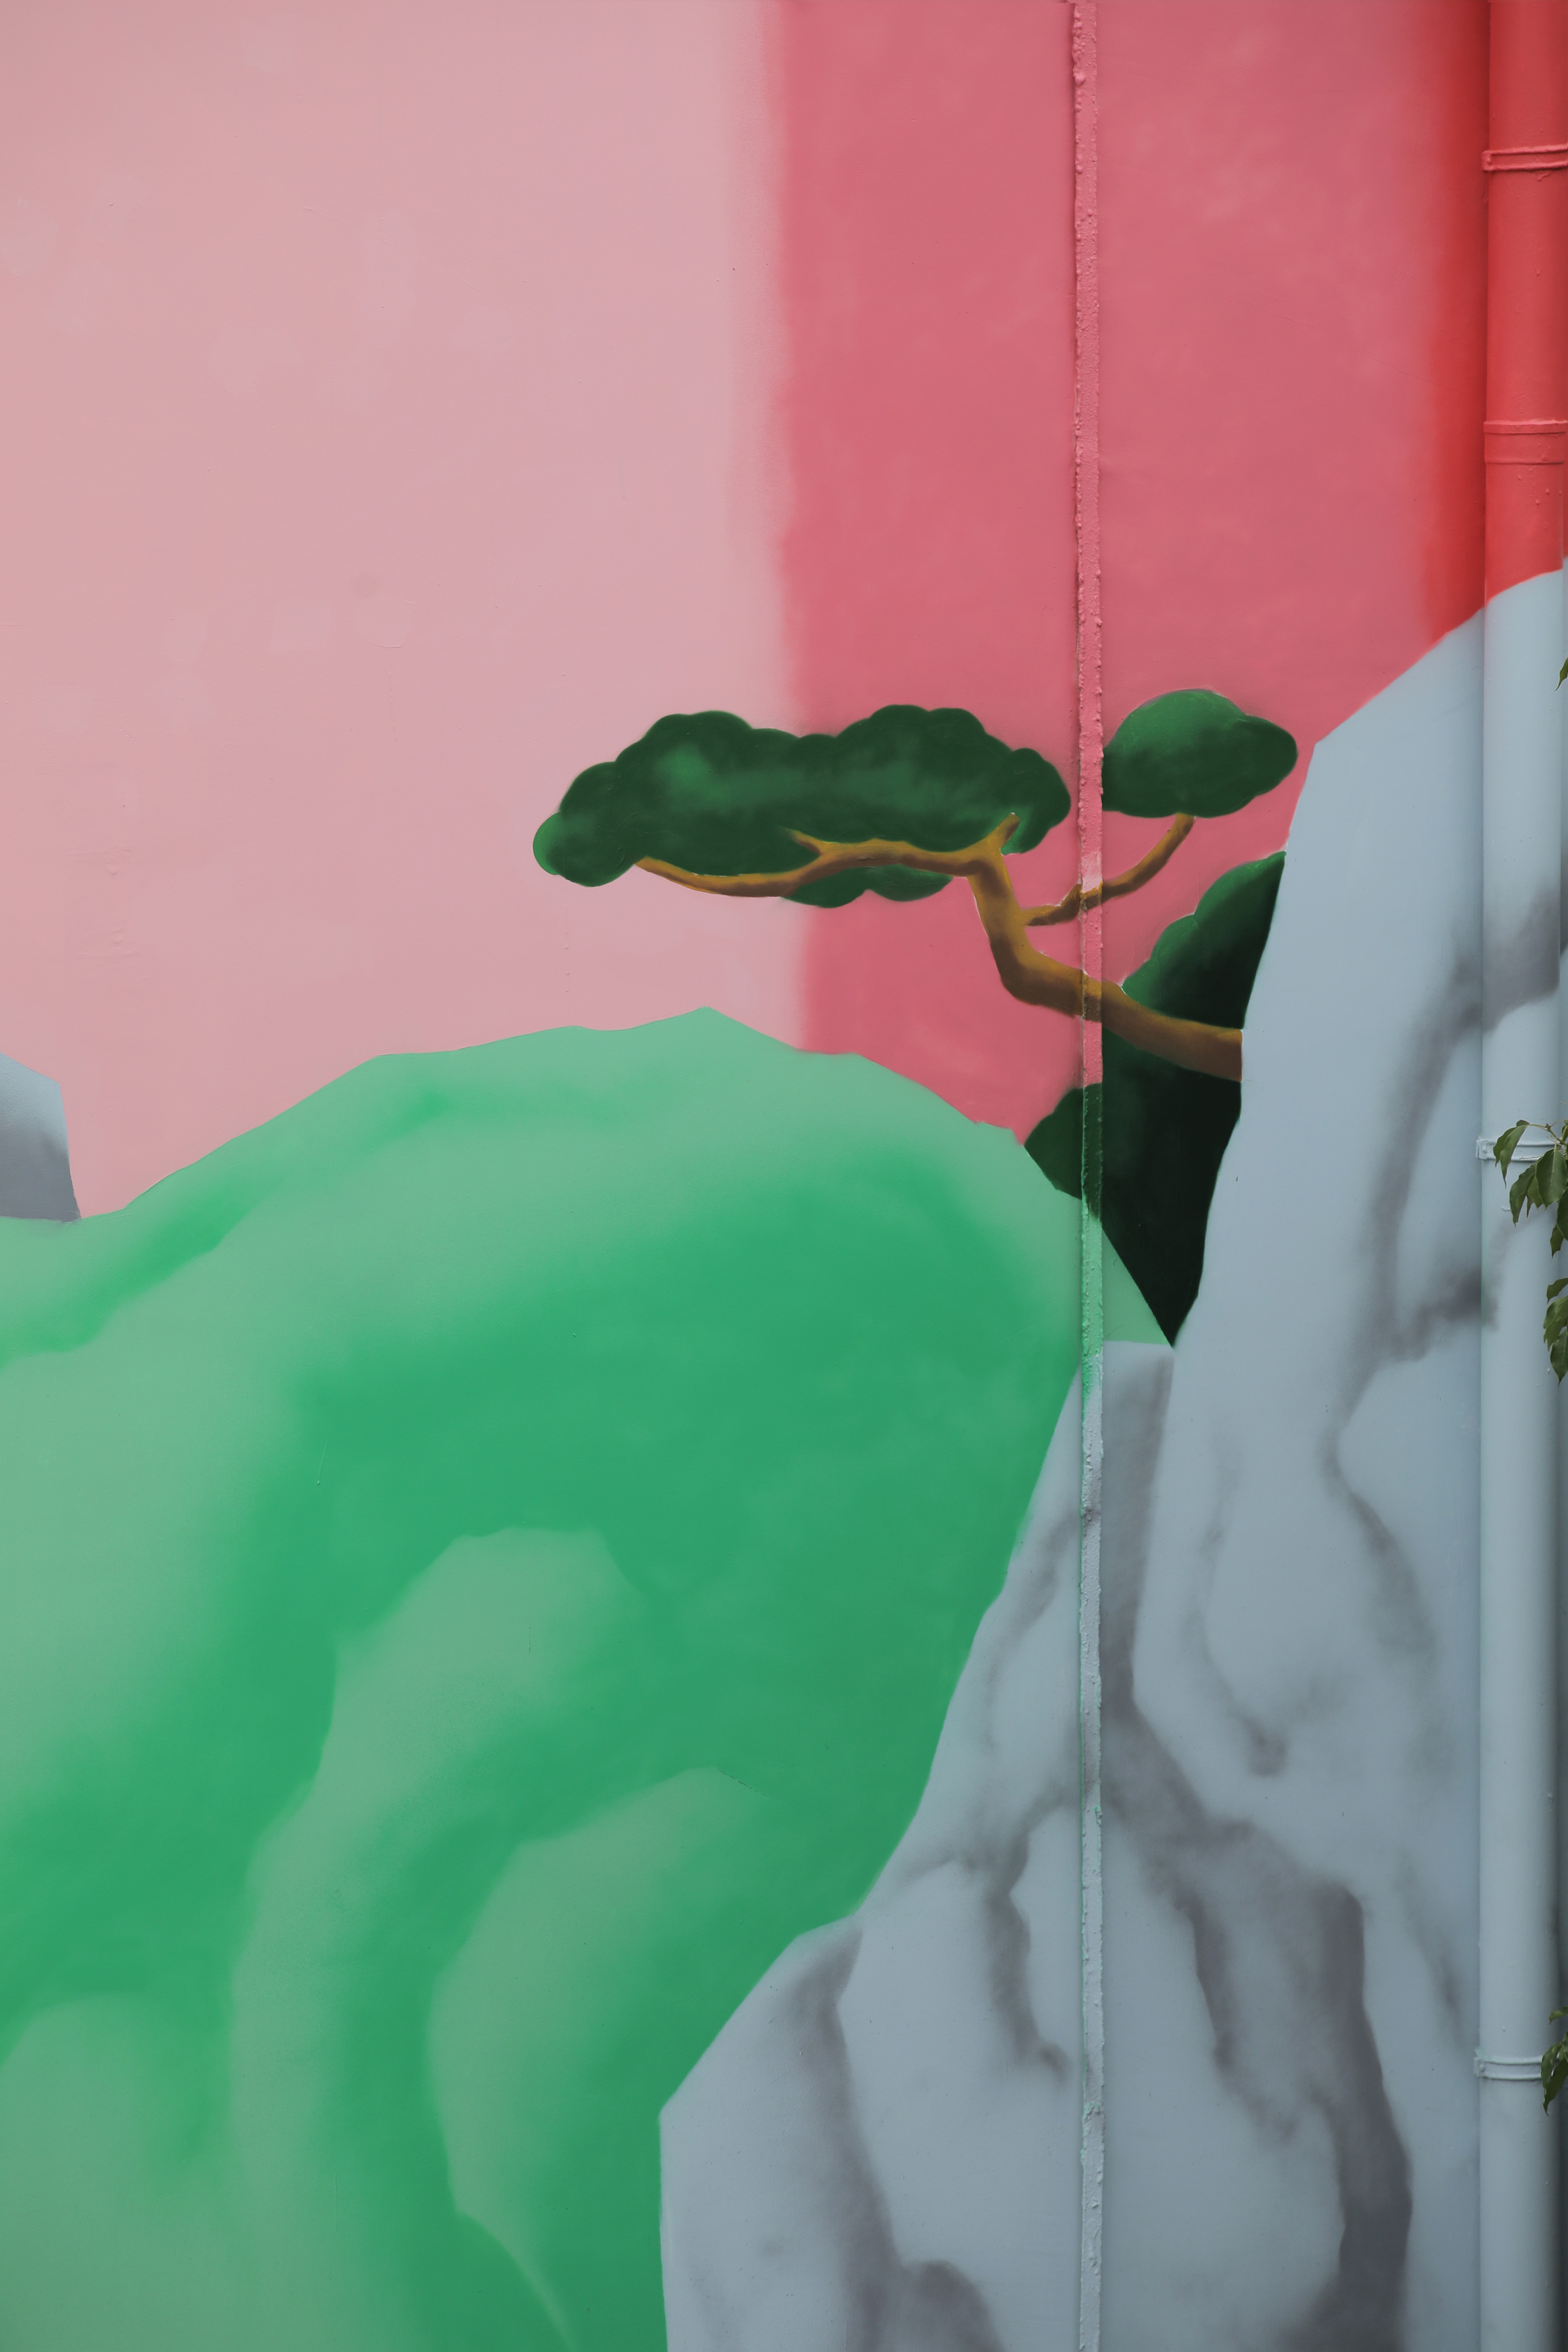 视觉艺术家林子楠全新壁画作品「Intergrowth」